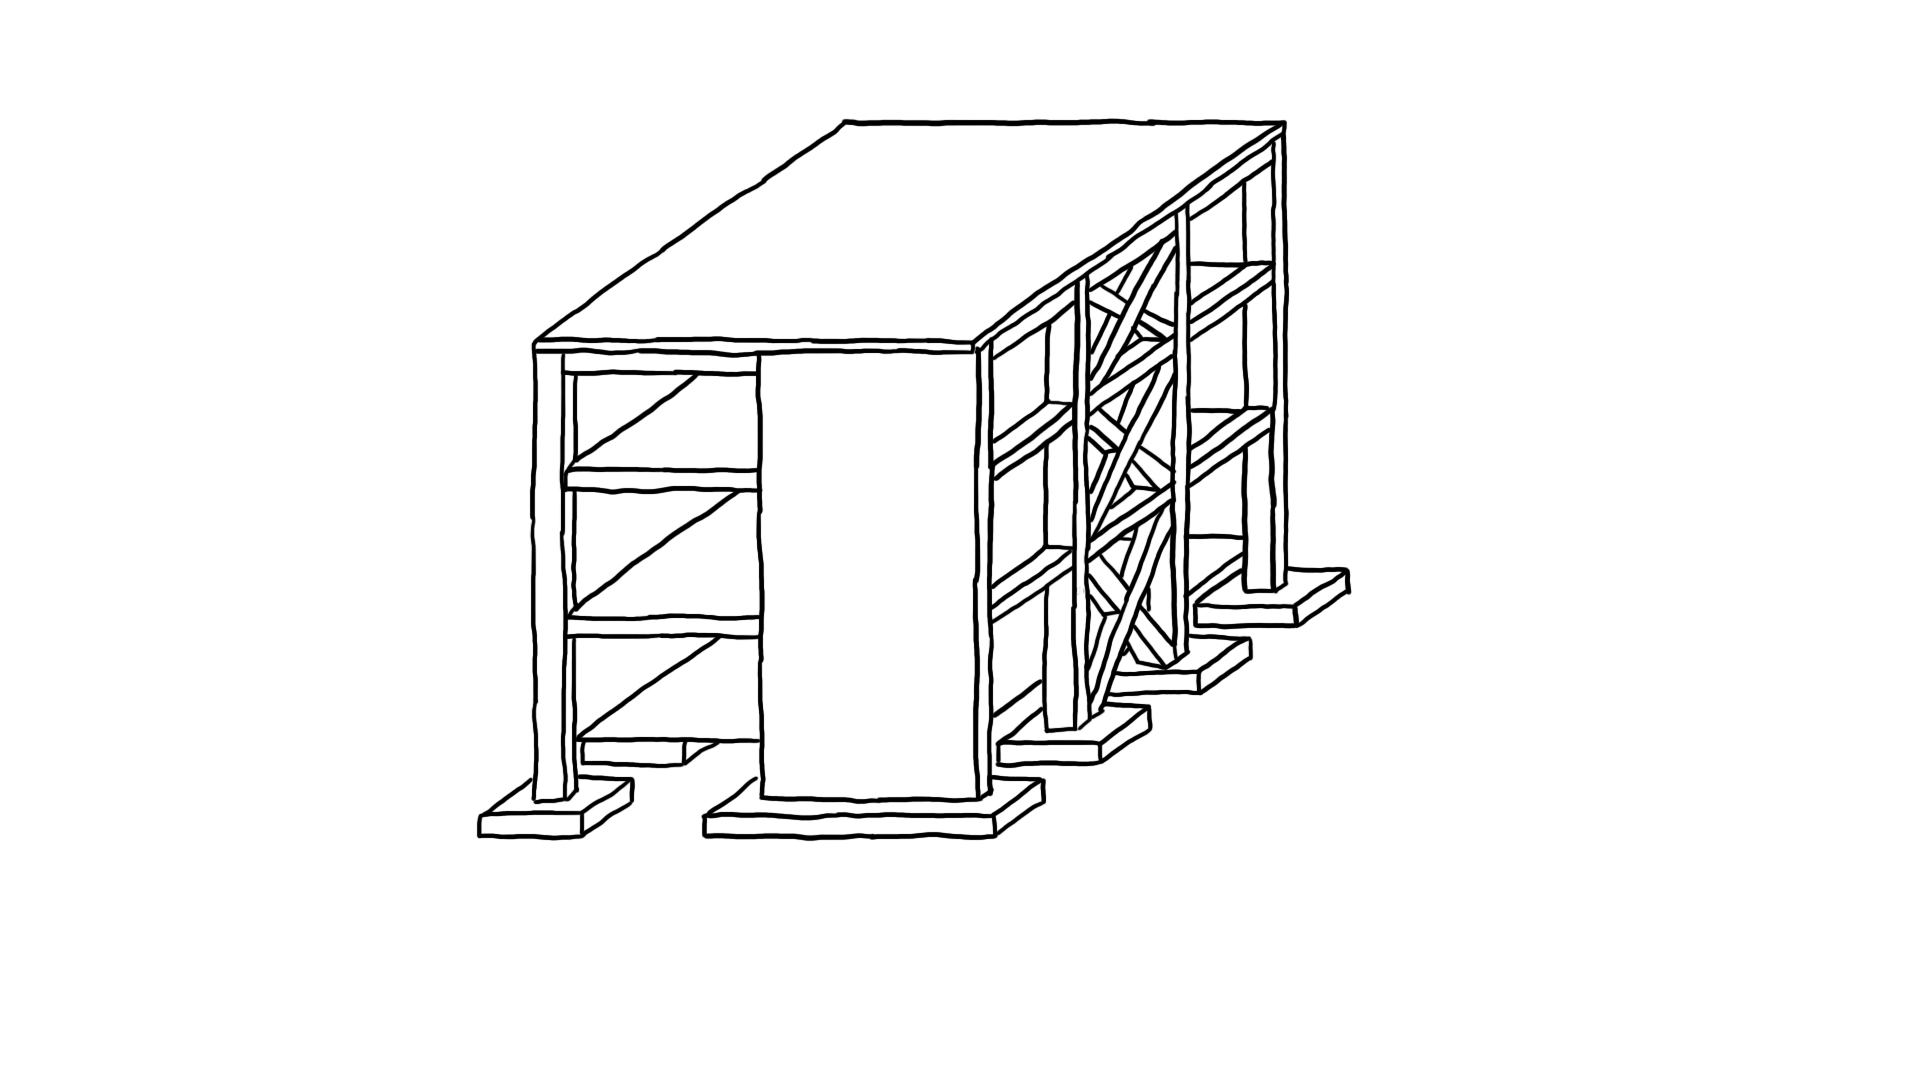 Vertical Structural Assemblies